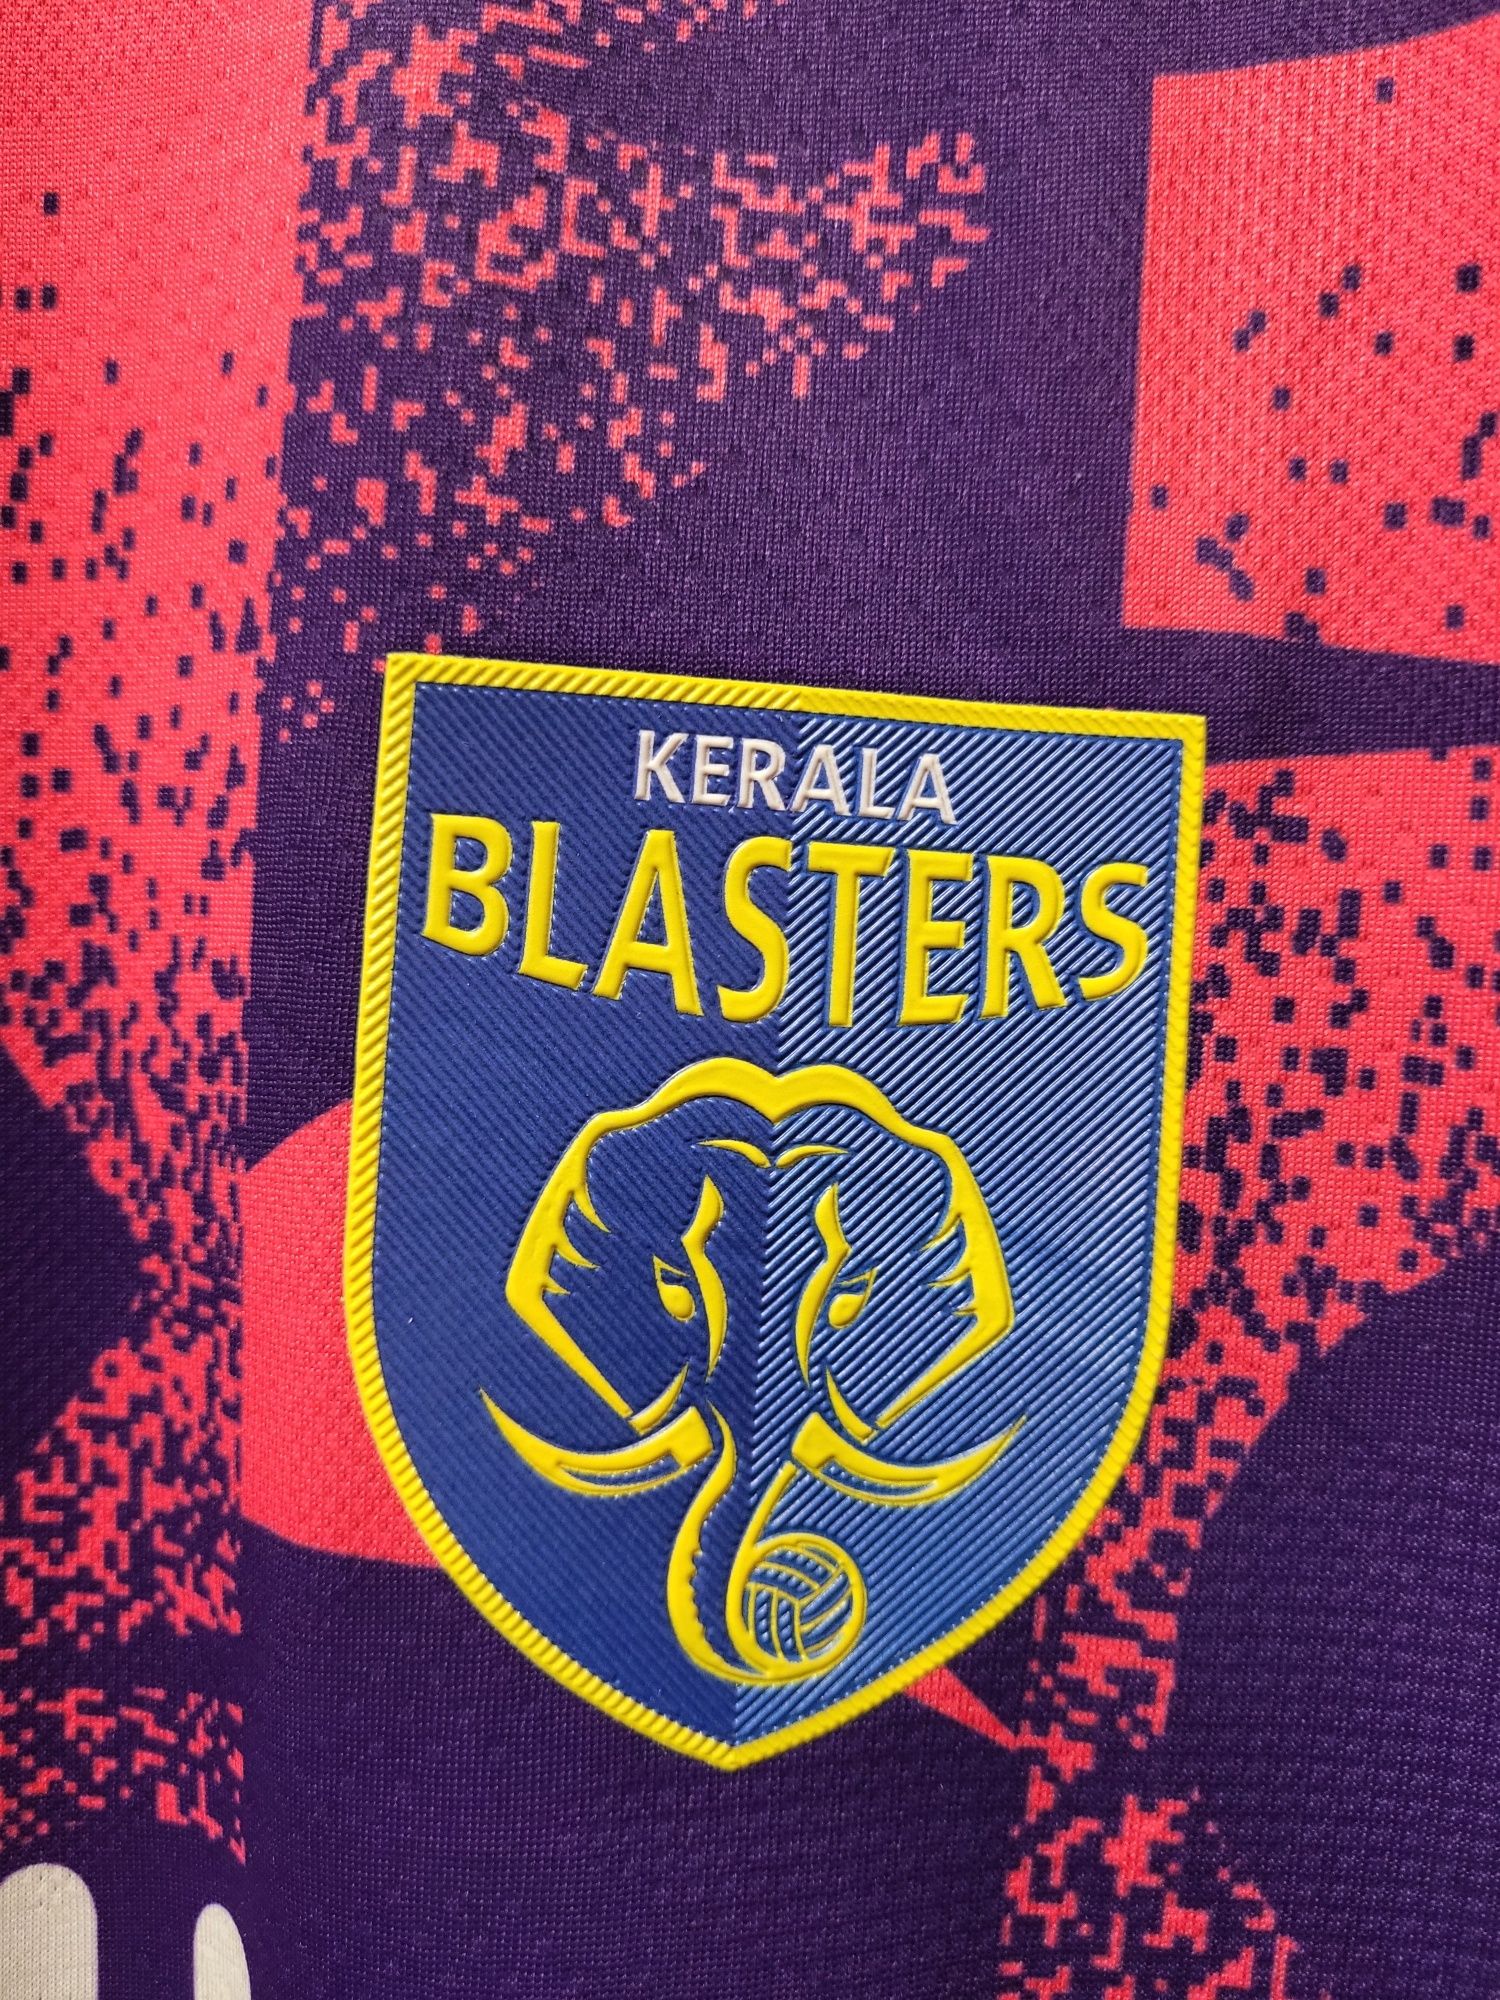 Kerala Blasters tricou fotbal